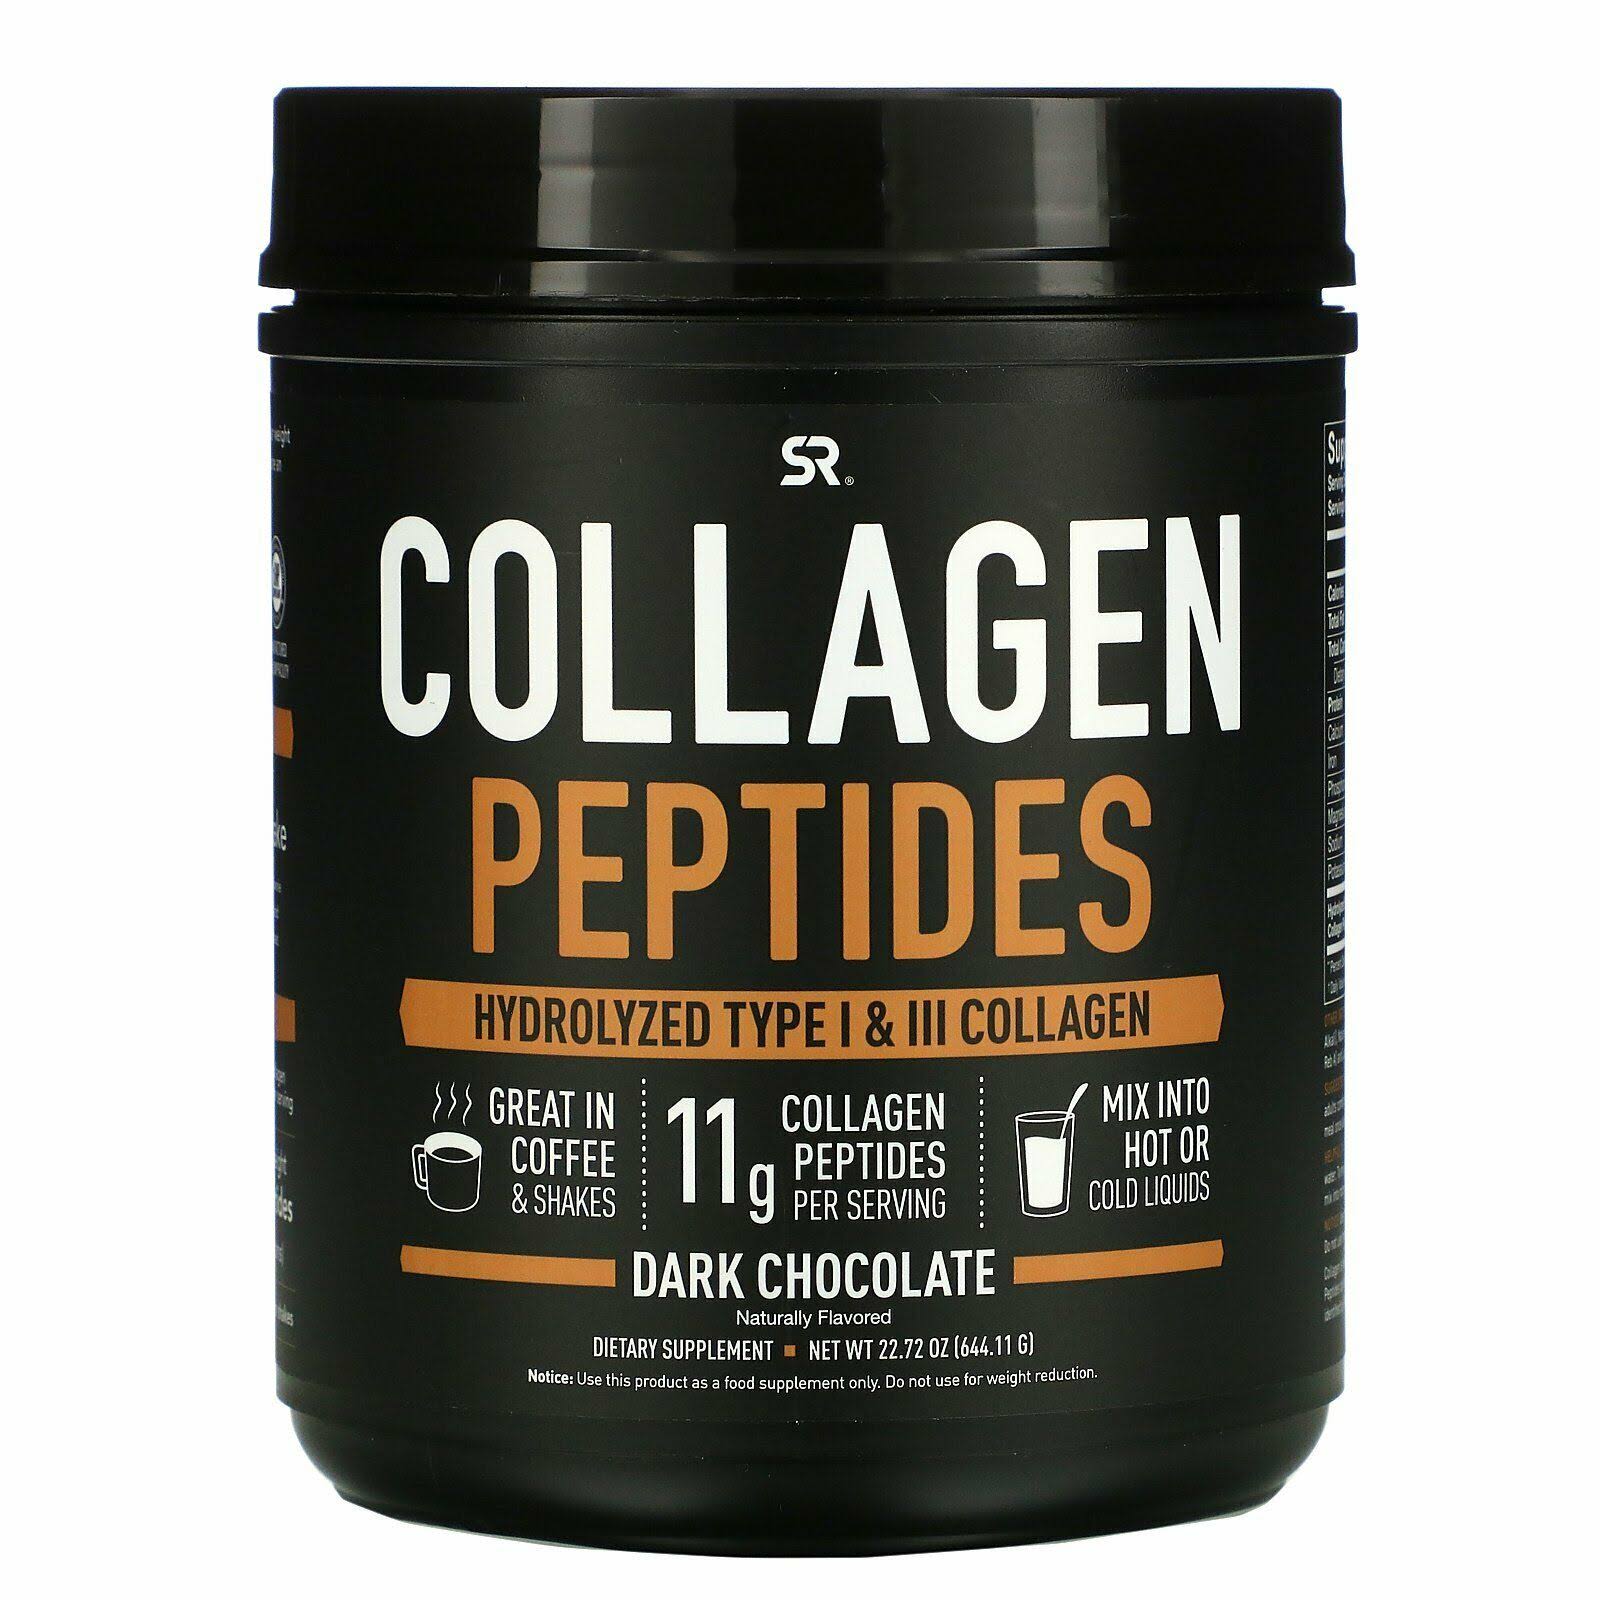 Sports Research Premium Collagen Peptides Powder Supplement - Dark Chocolate, 22.7oz